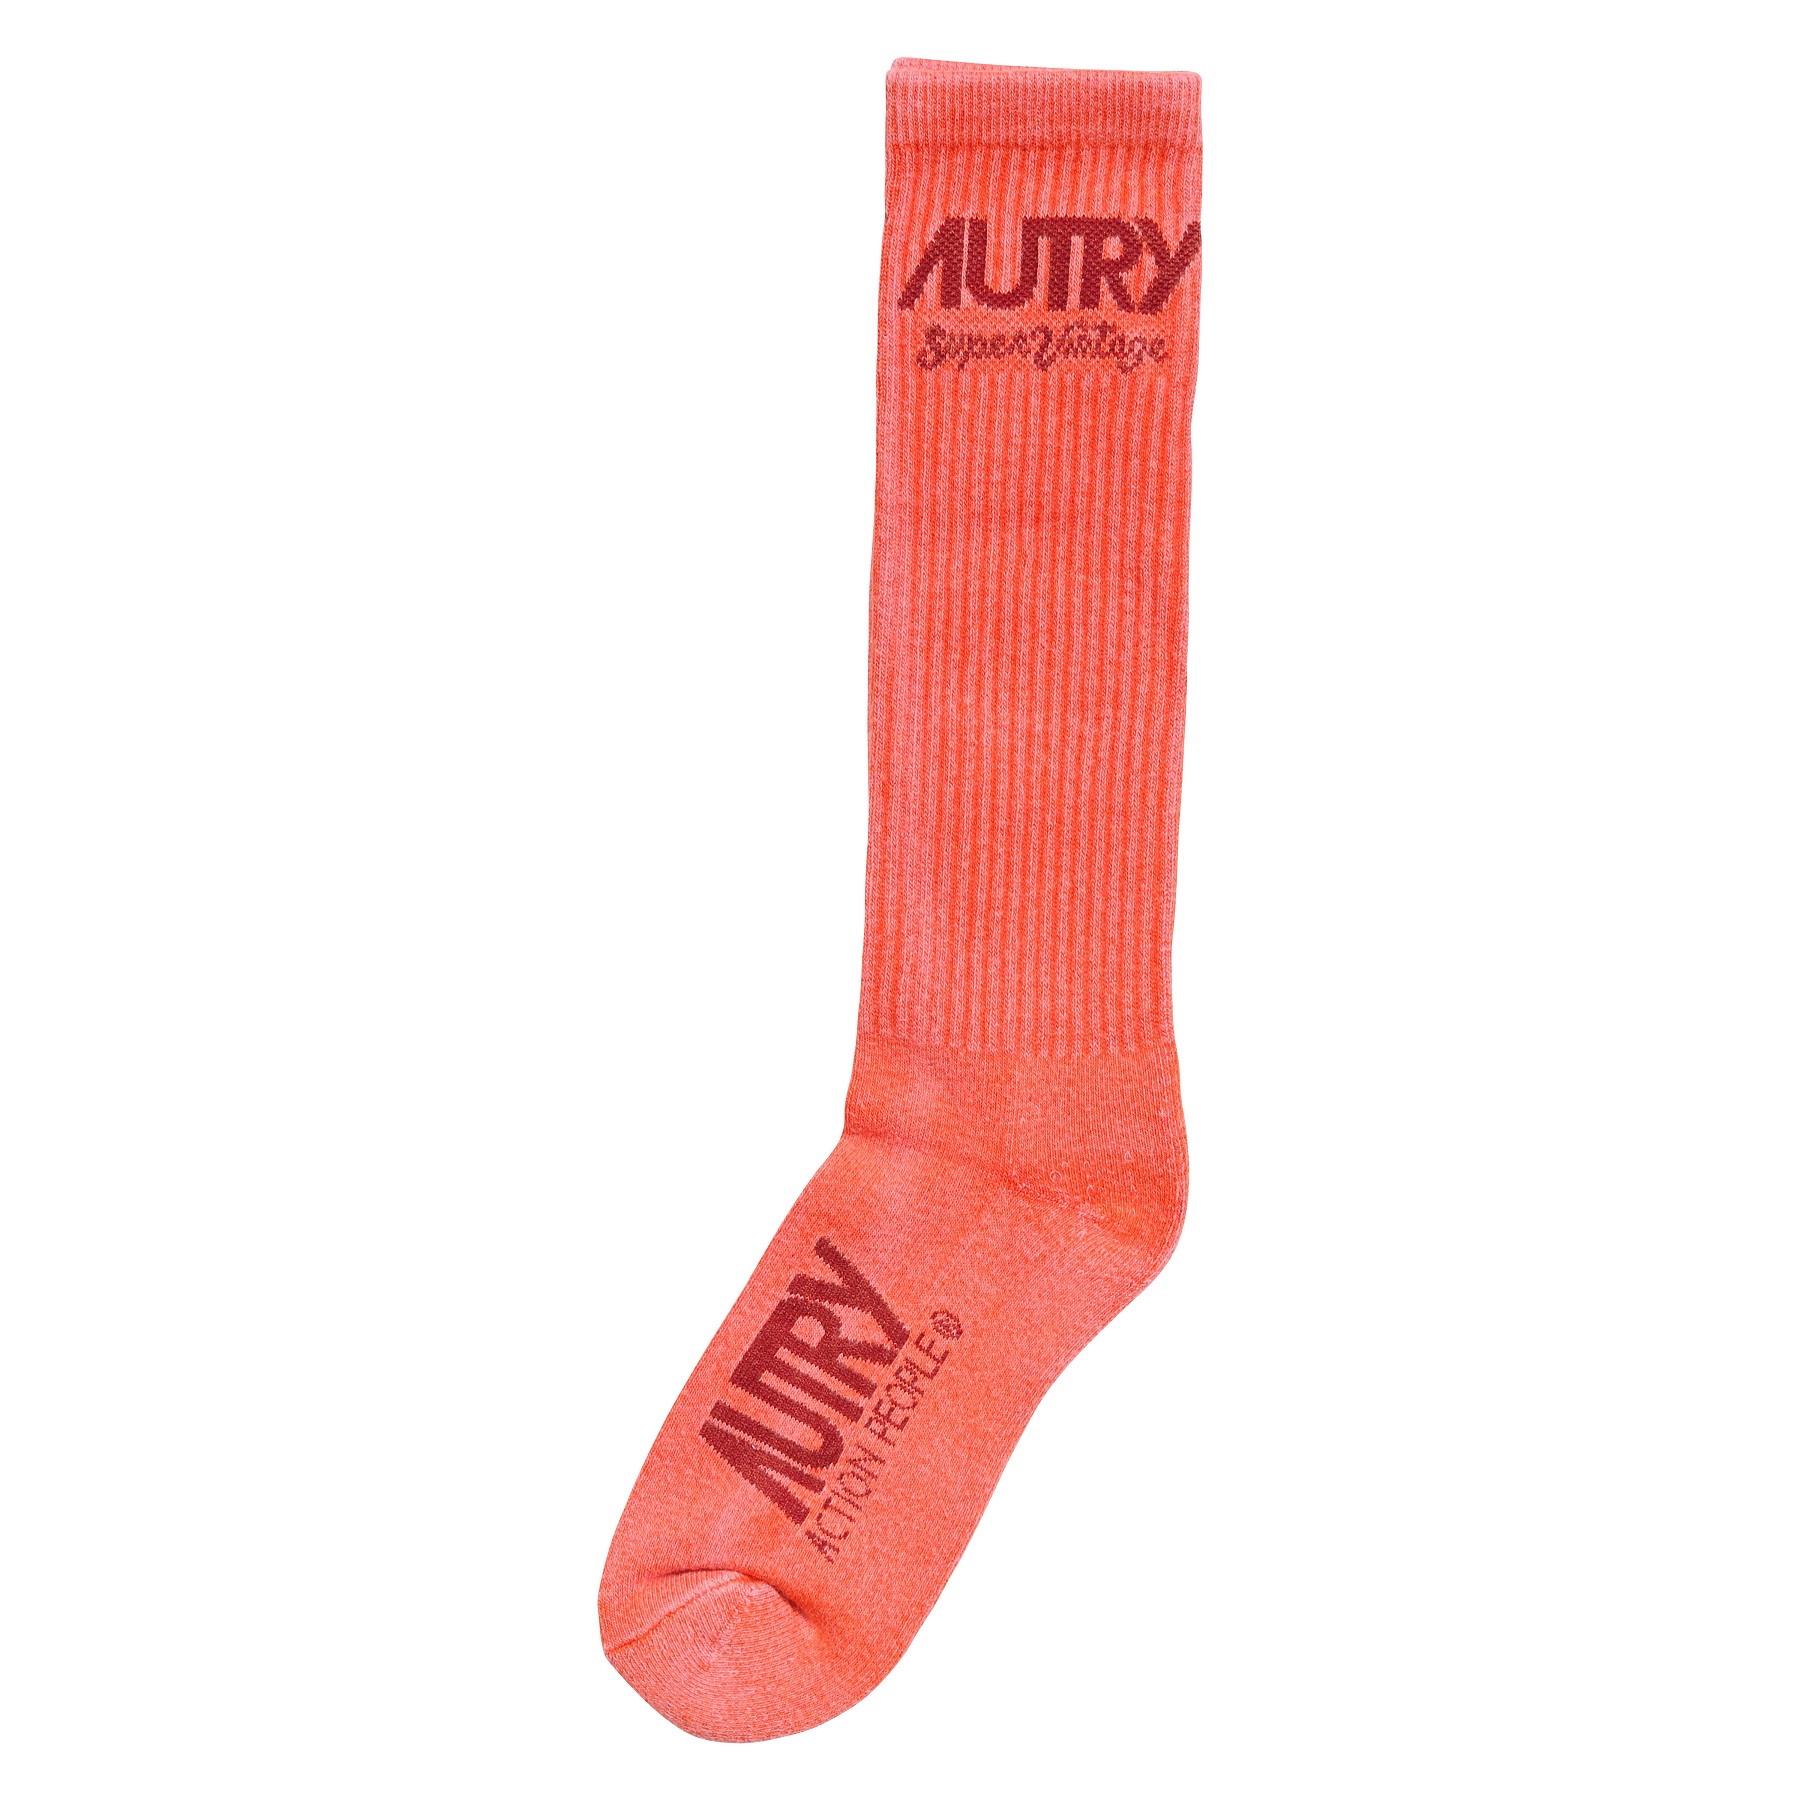 Autry Action Shoes Socks Supervintage Tinto Orange L/43-47